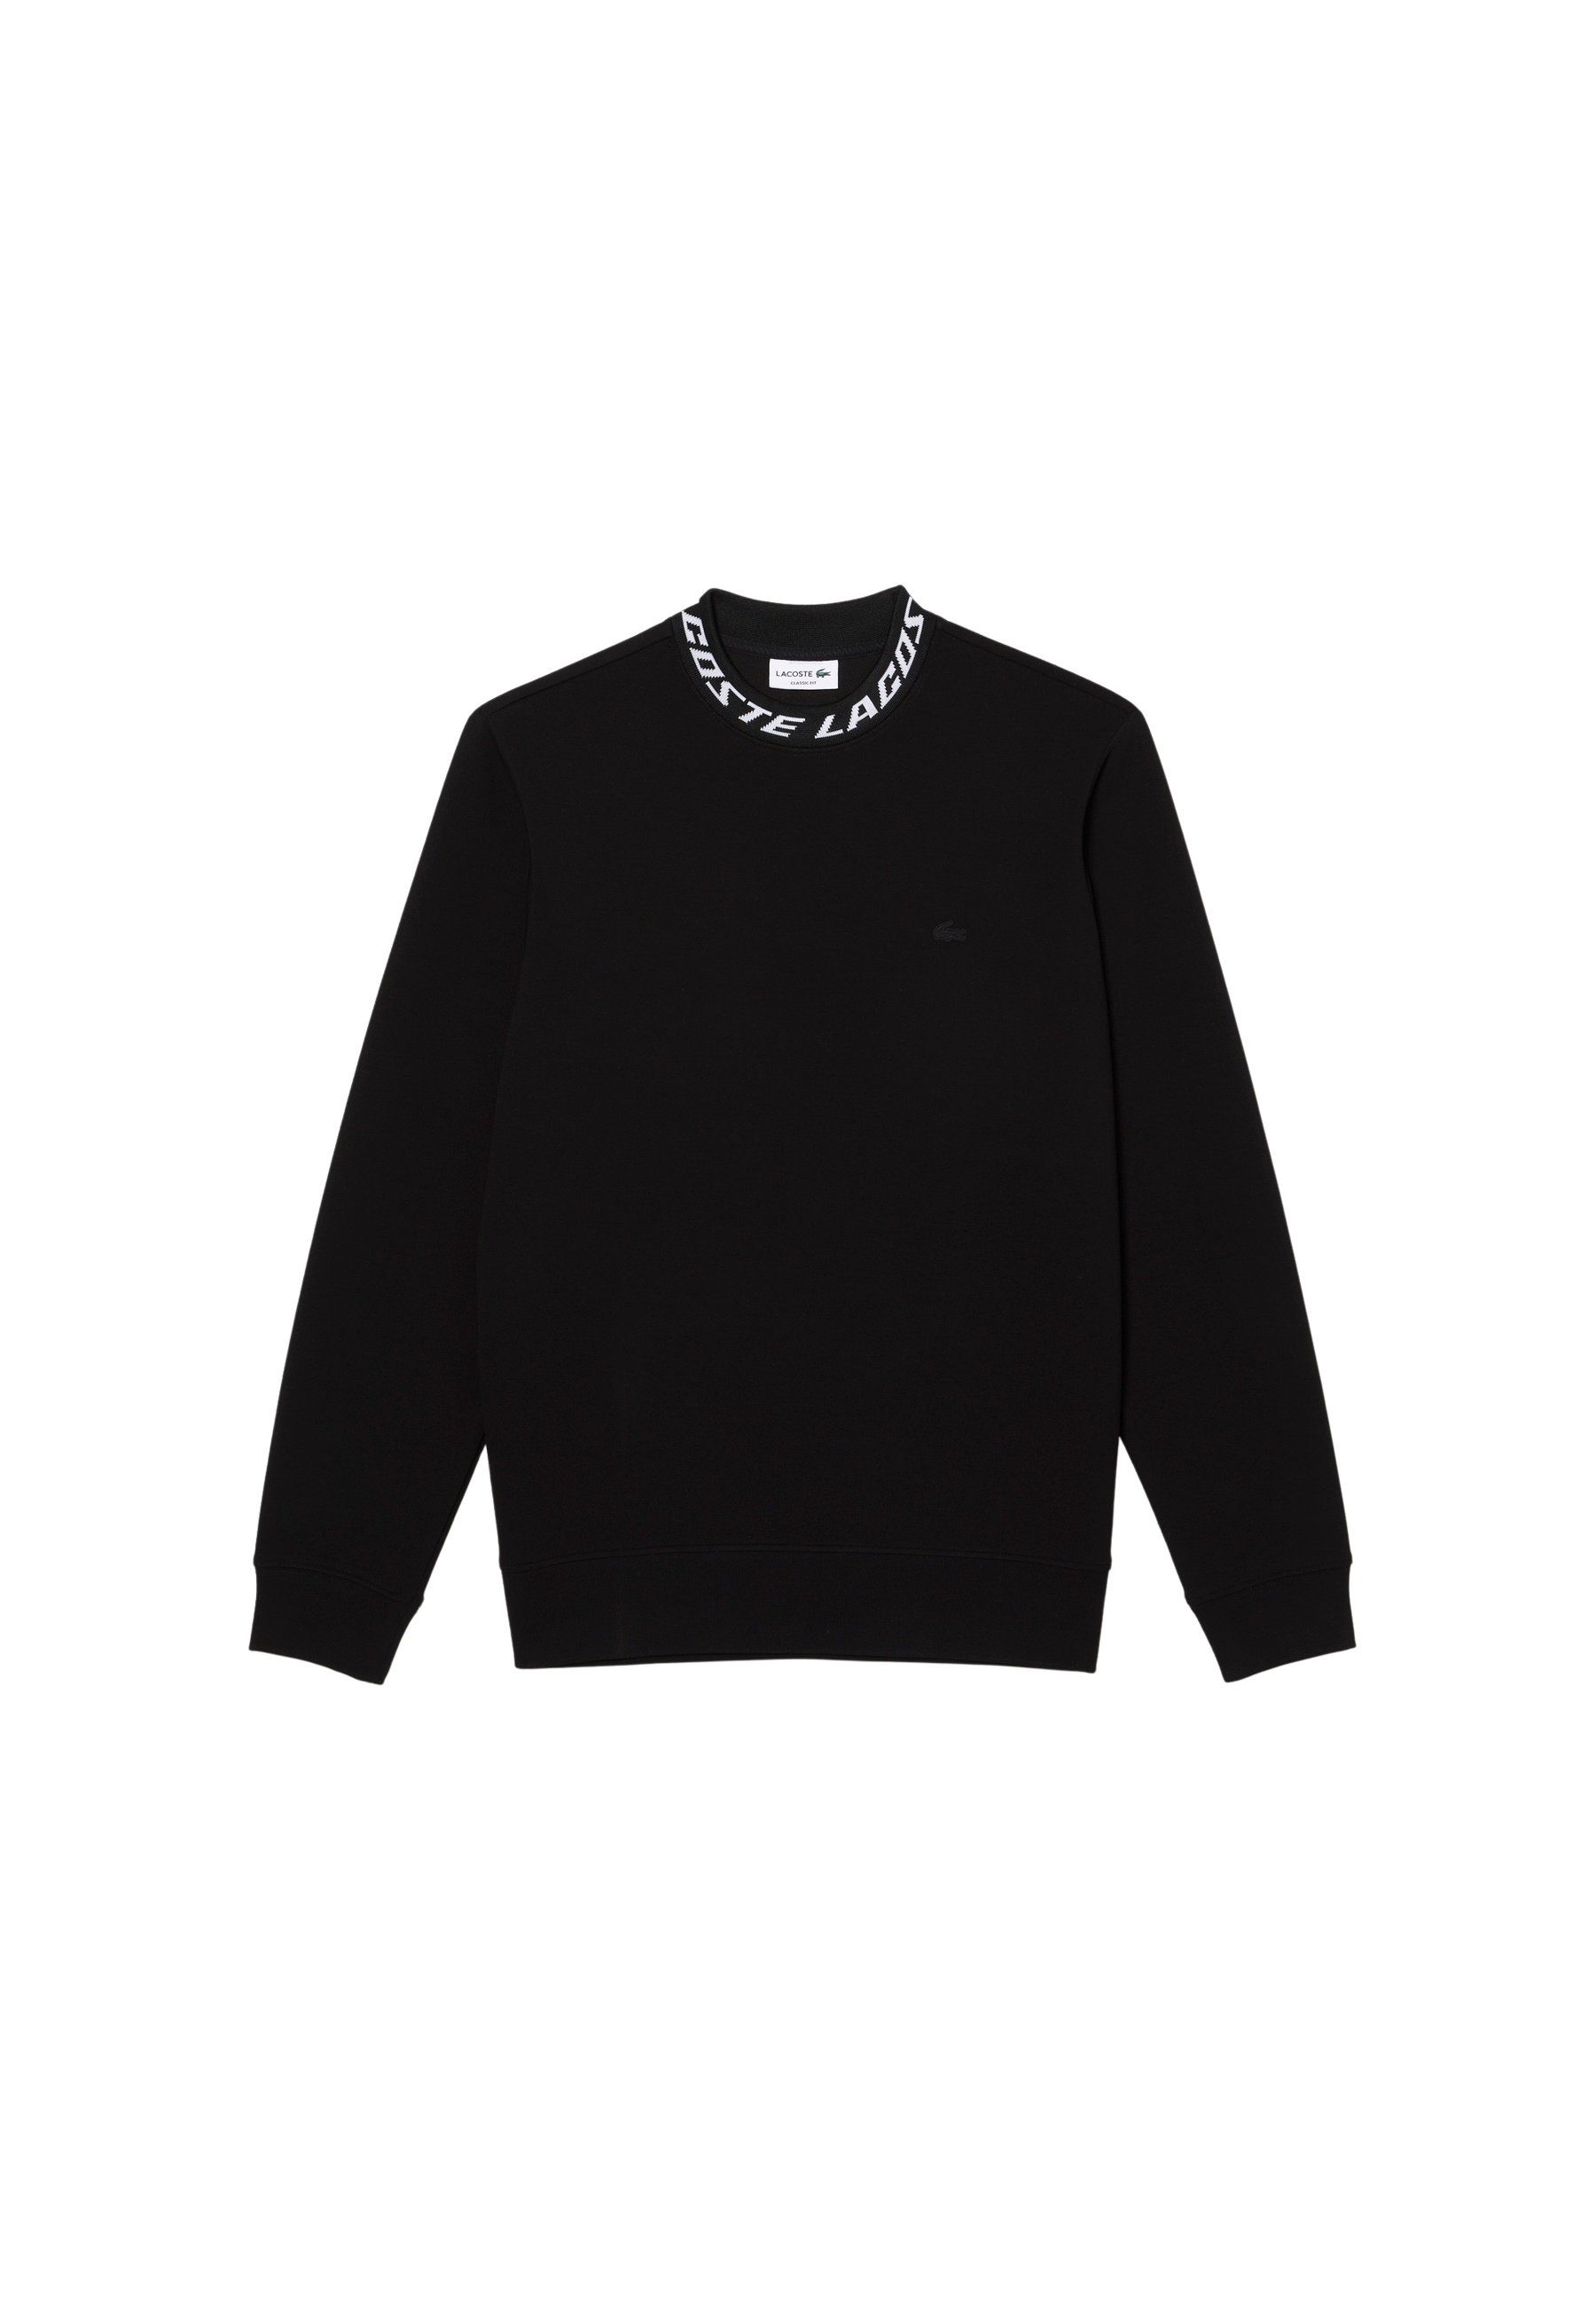 Pullover Sweatshirt mit Lacoste Sweatshirt Logo-Kragen (1-tlg)